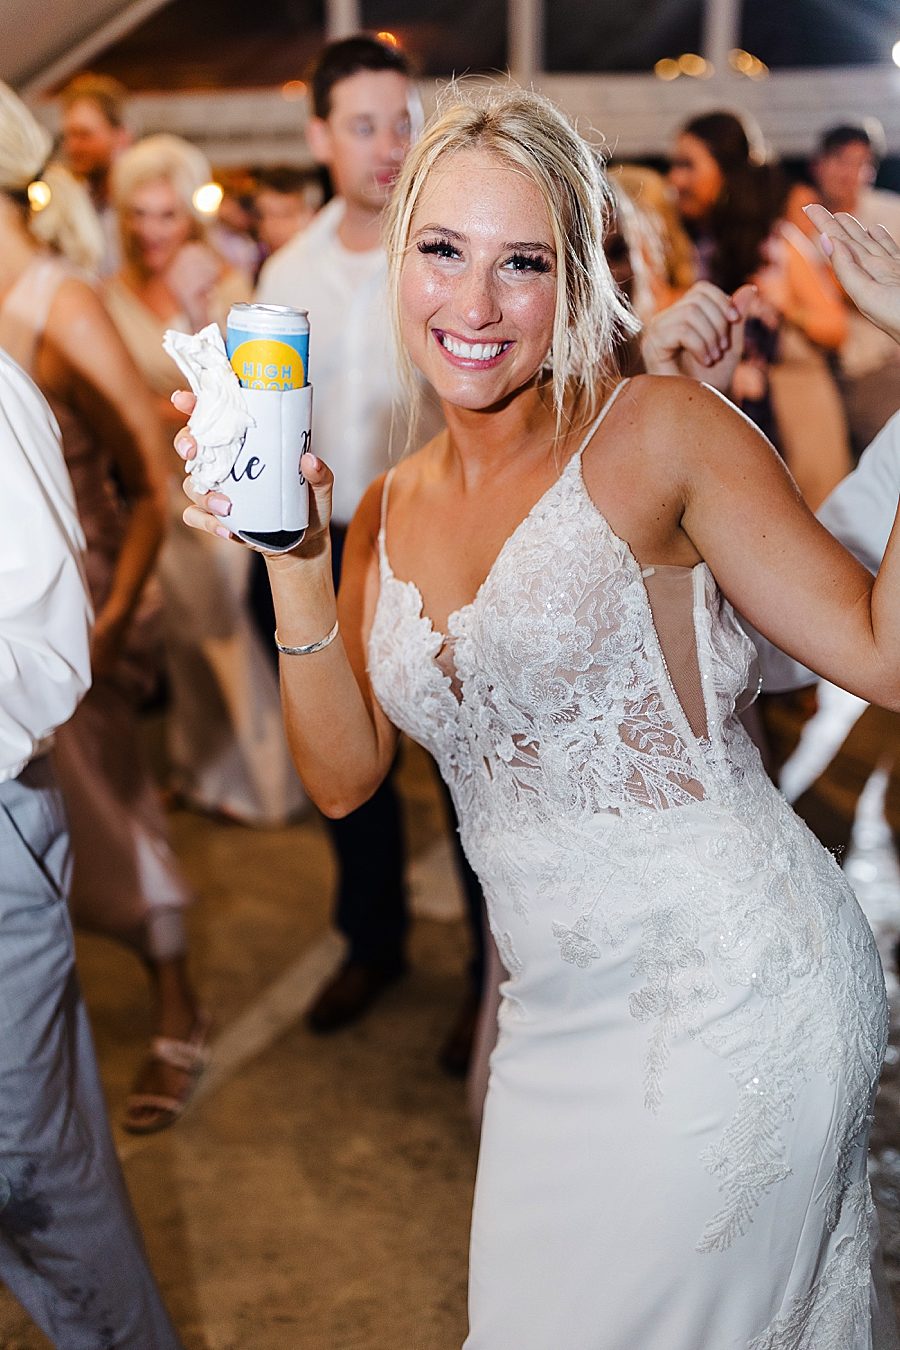 bride at reception